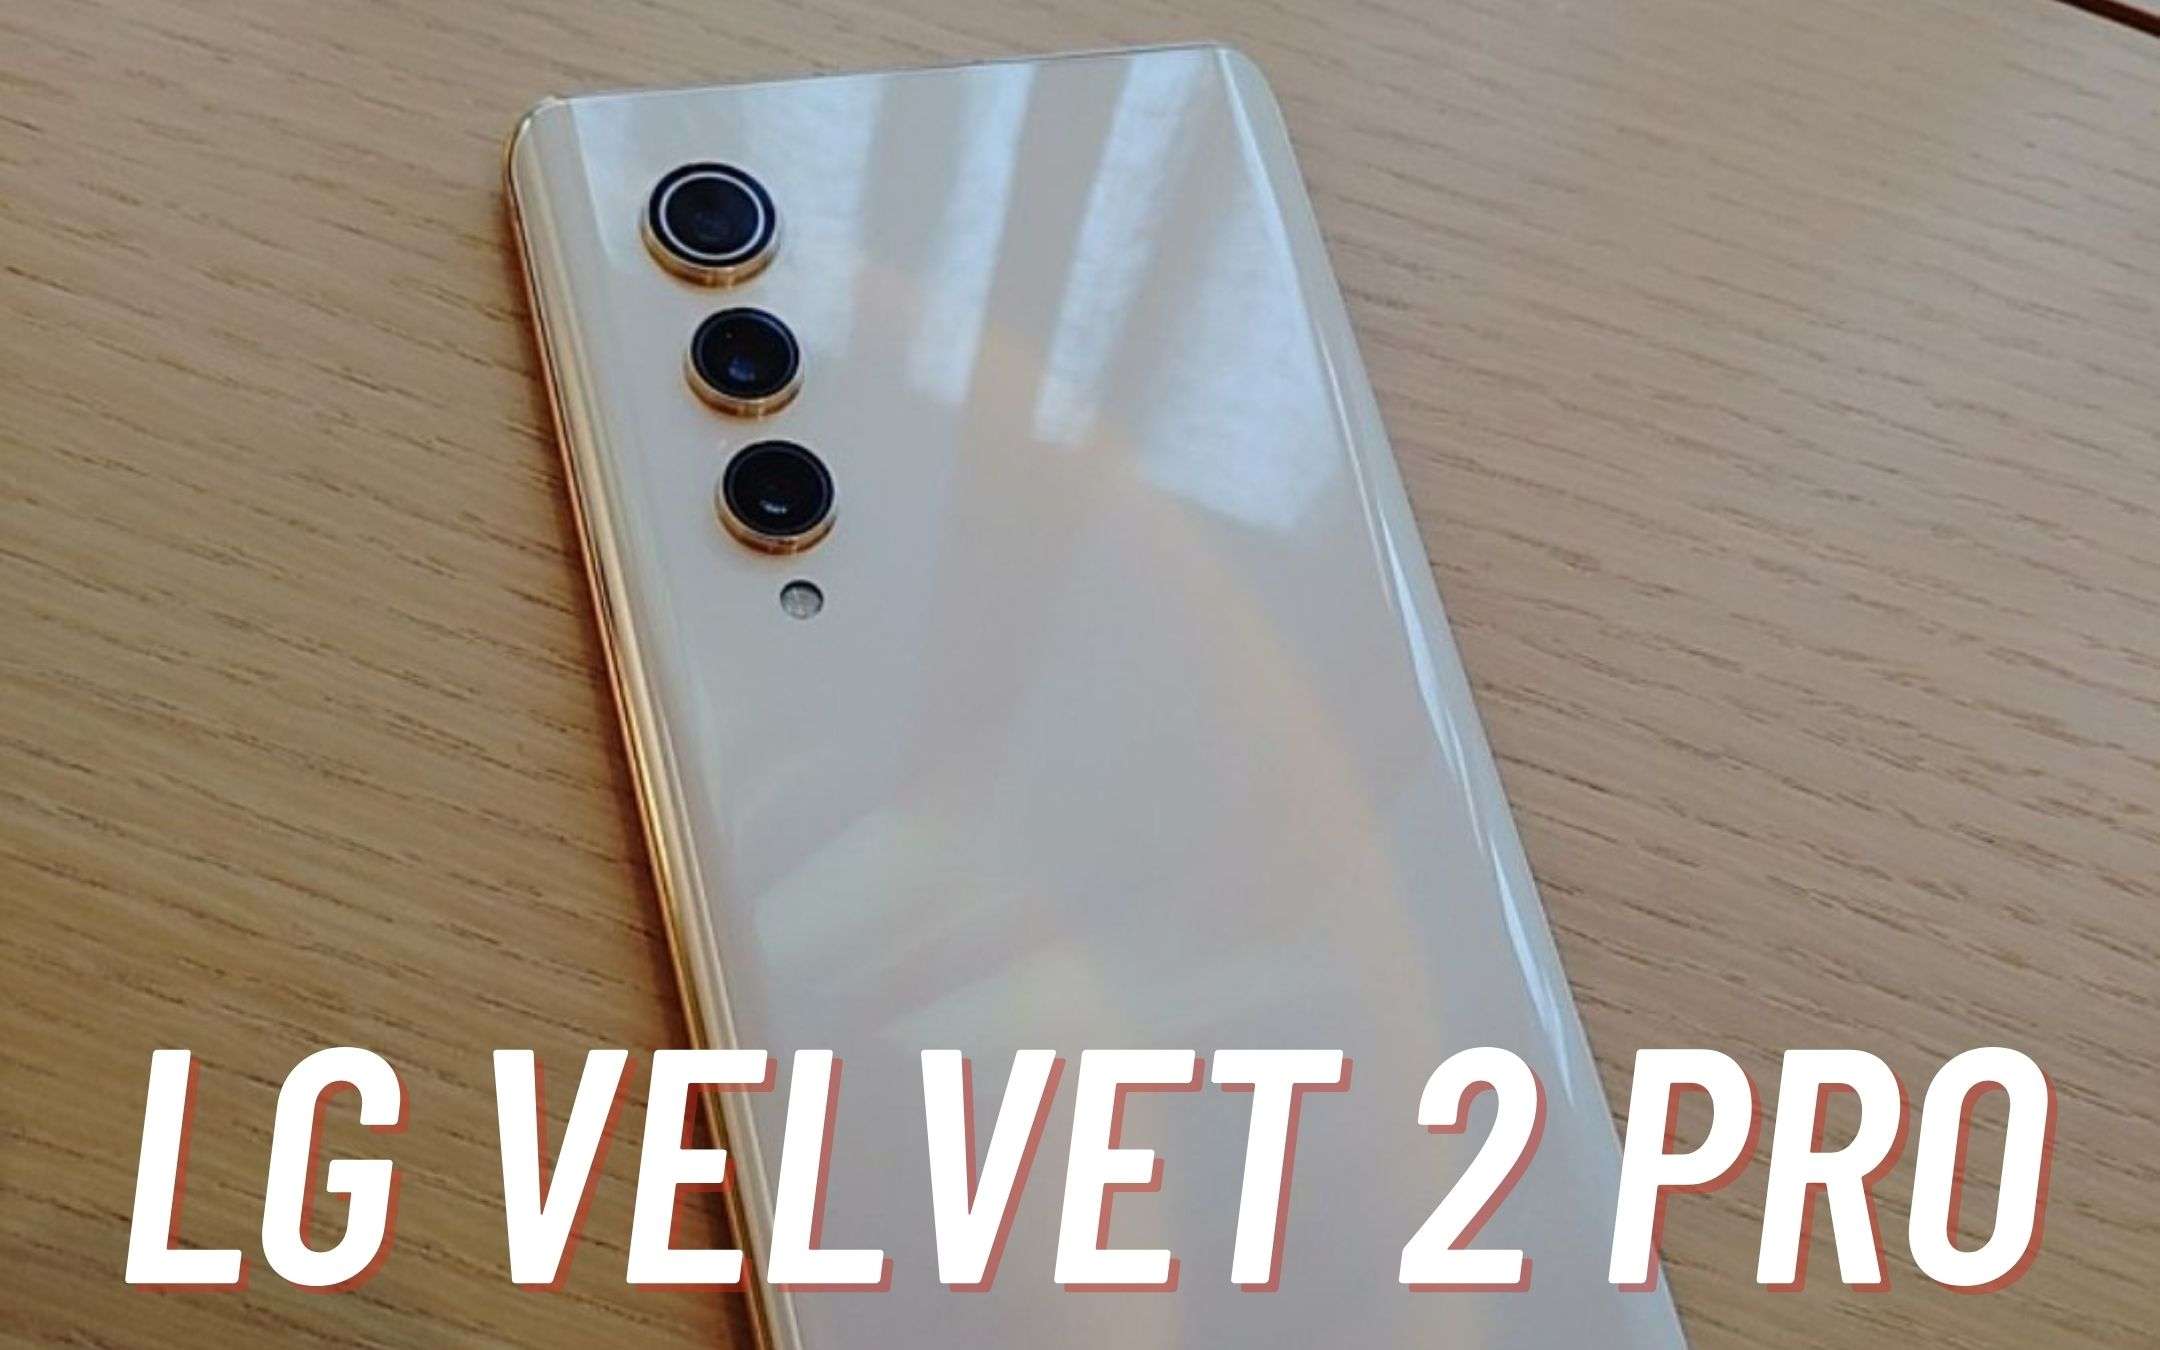 LG Velvet 2 Pro sarebbe stato una BOMBA!